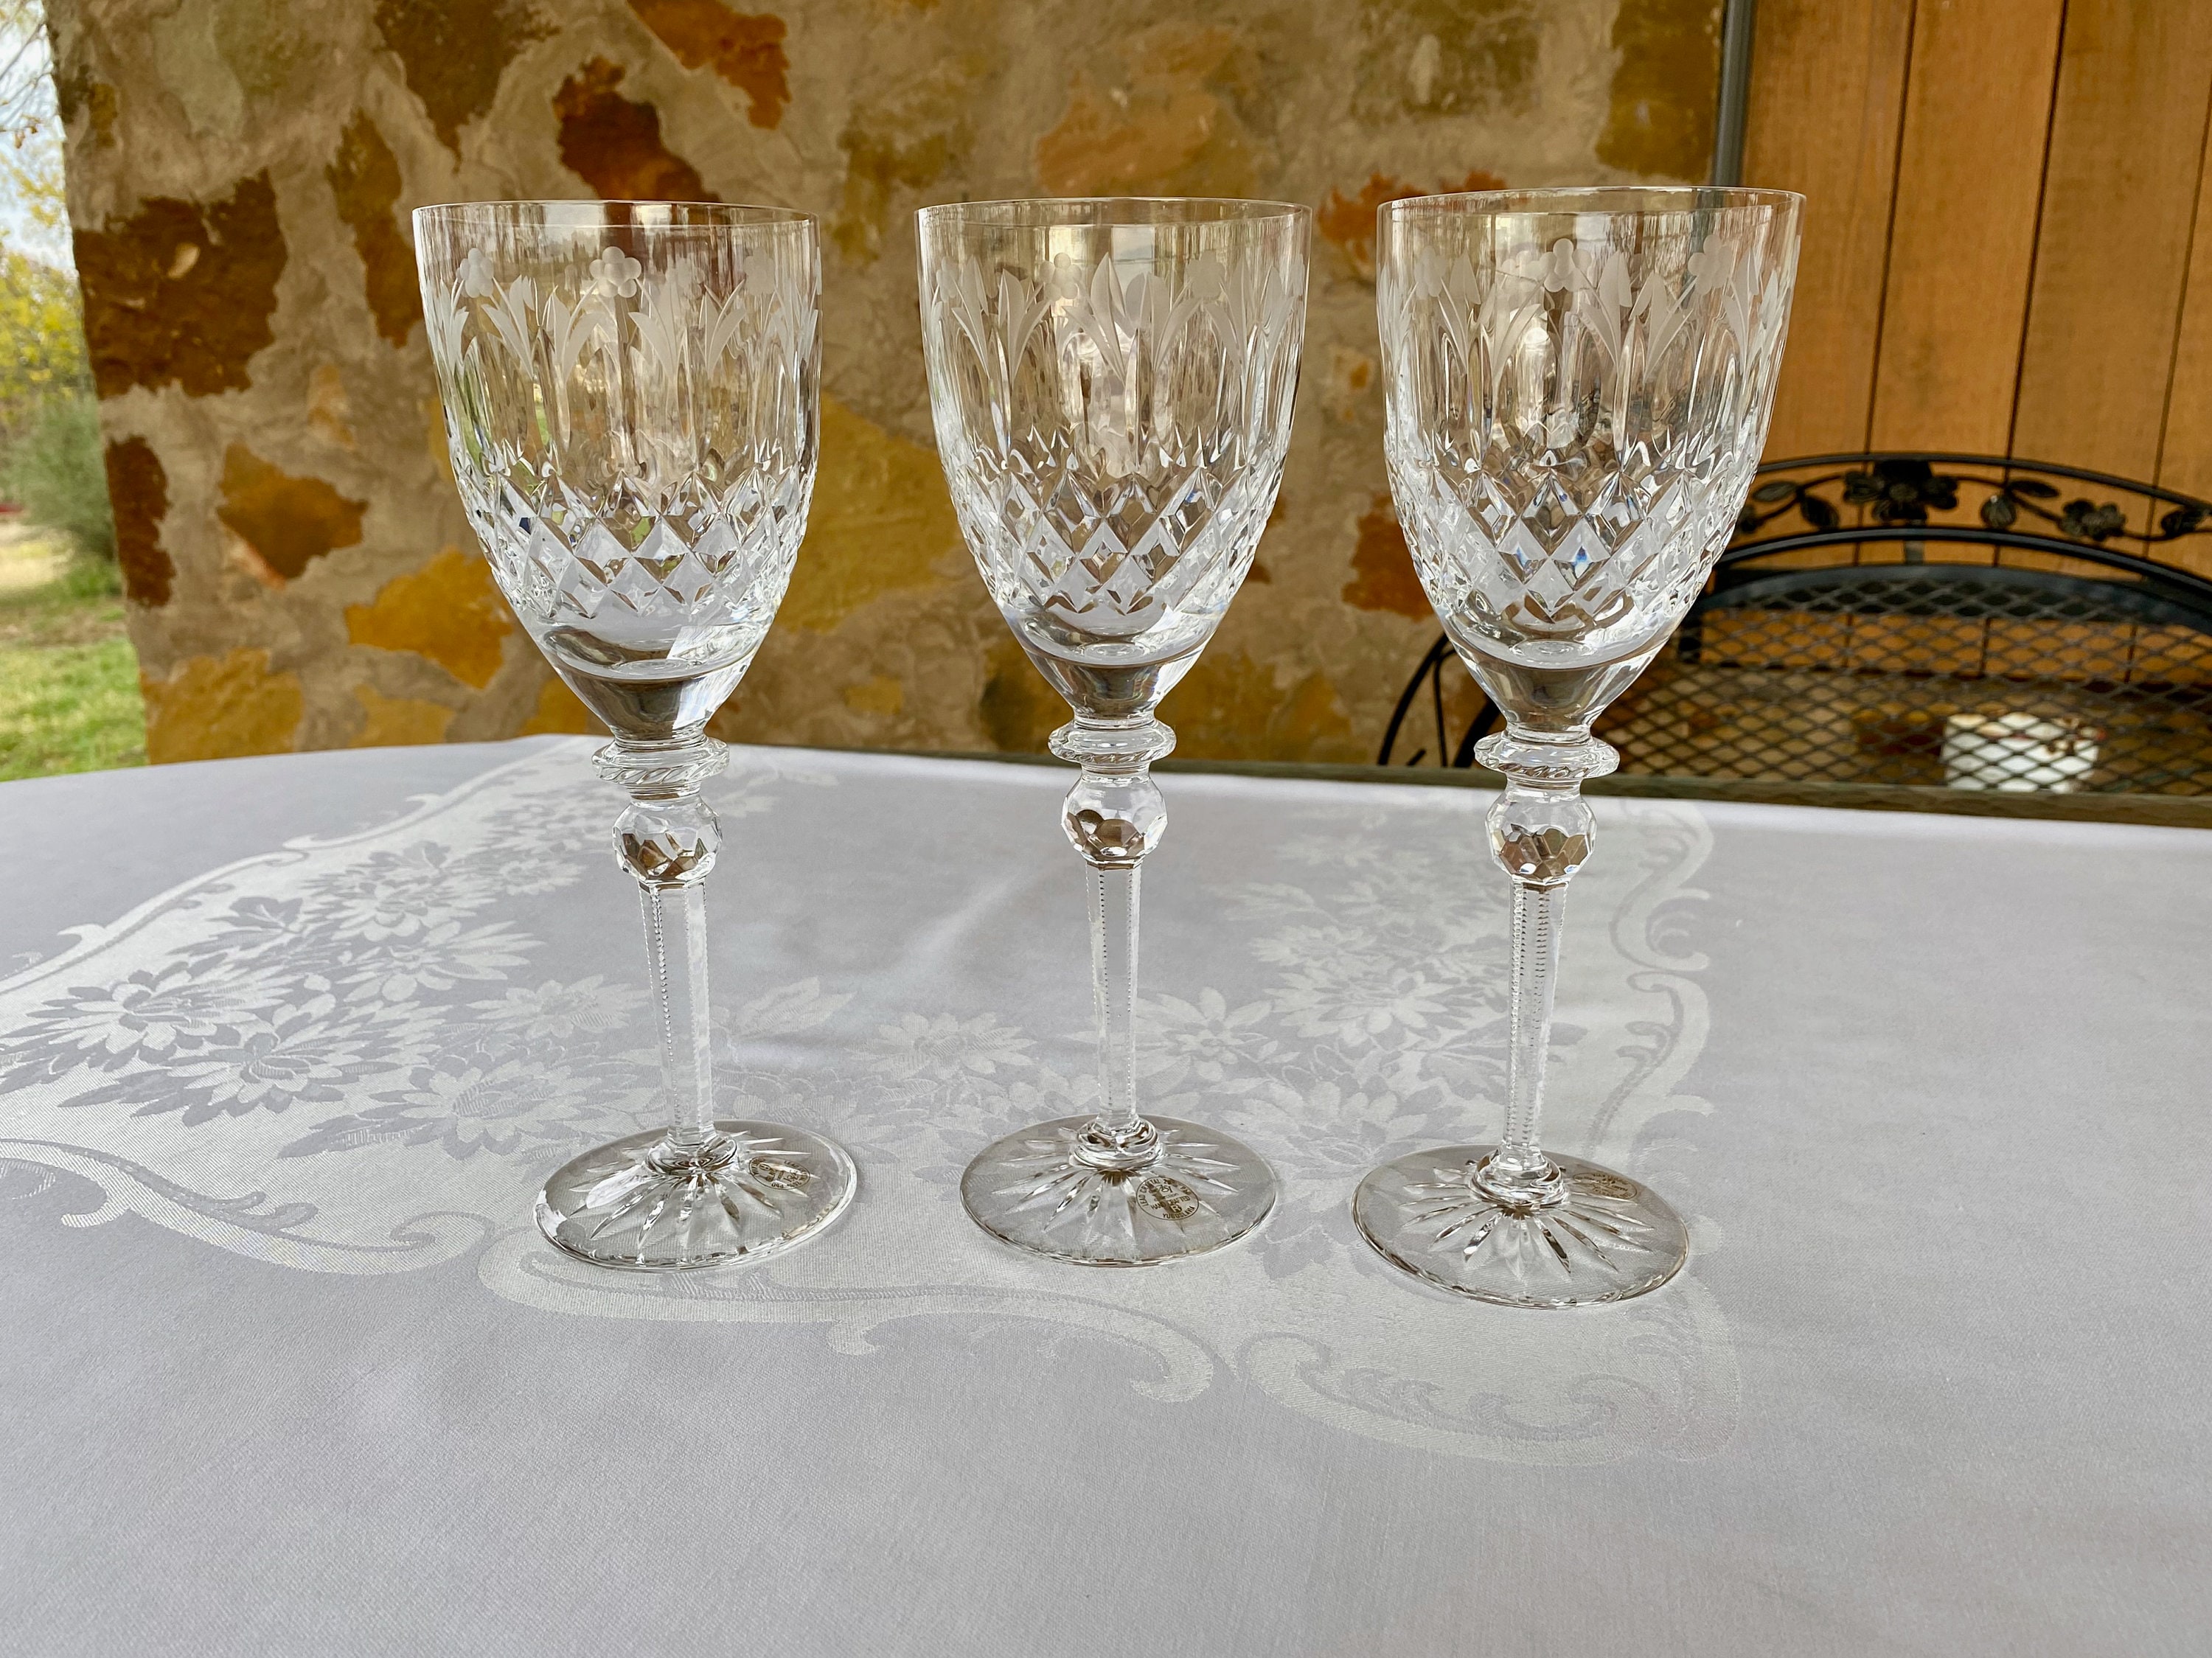 VINO WINE GLASS SQUARE PLATE - Swans Fine Home